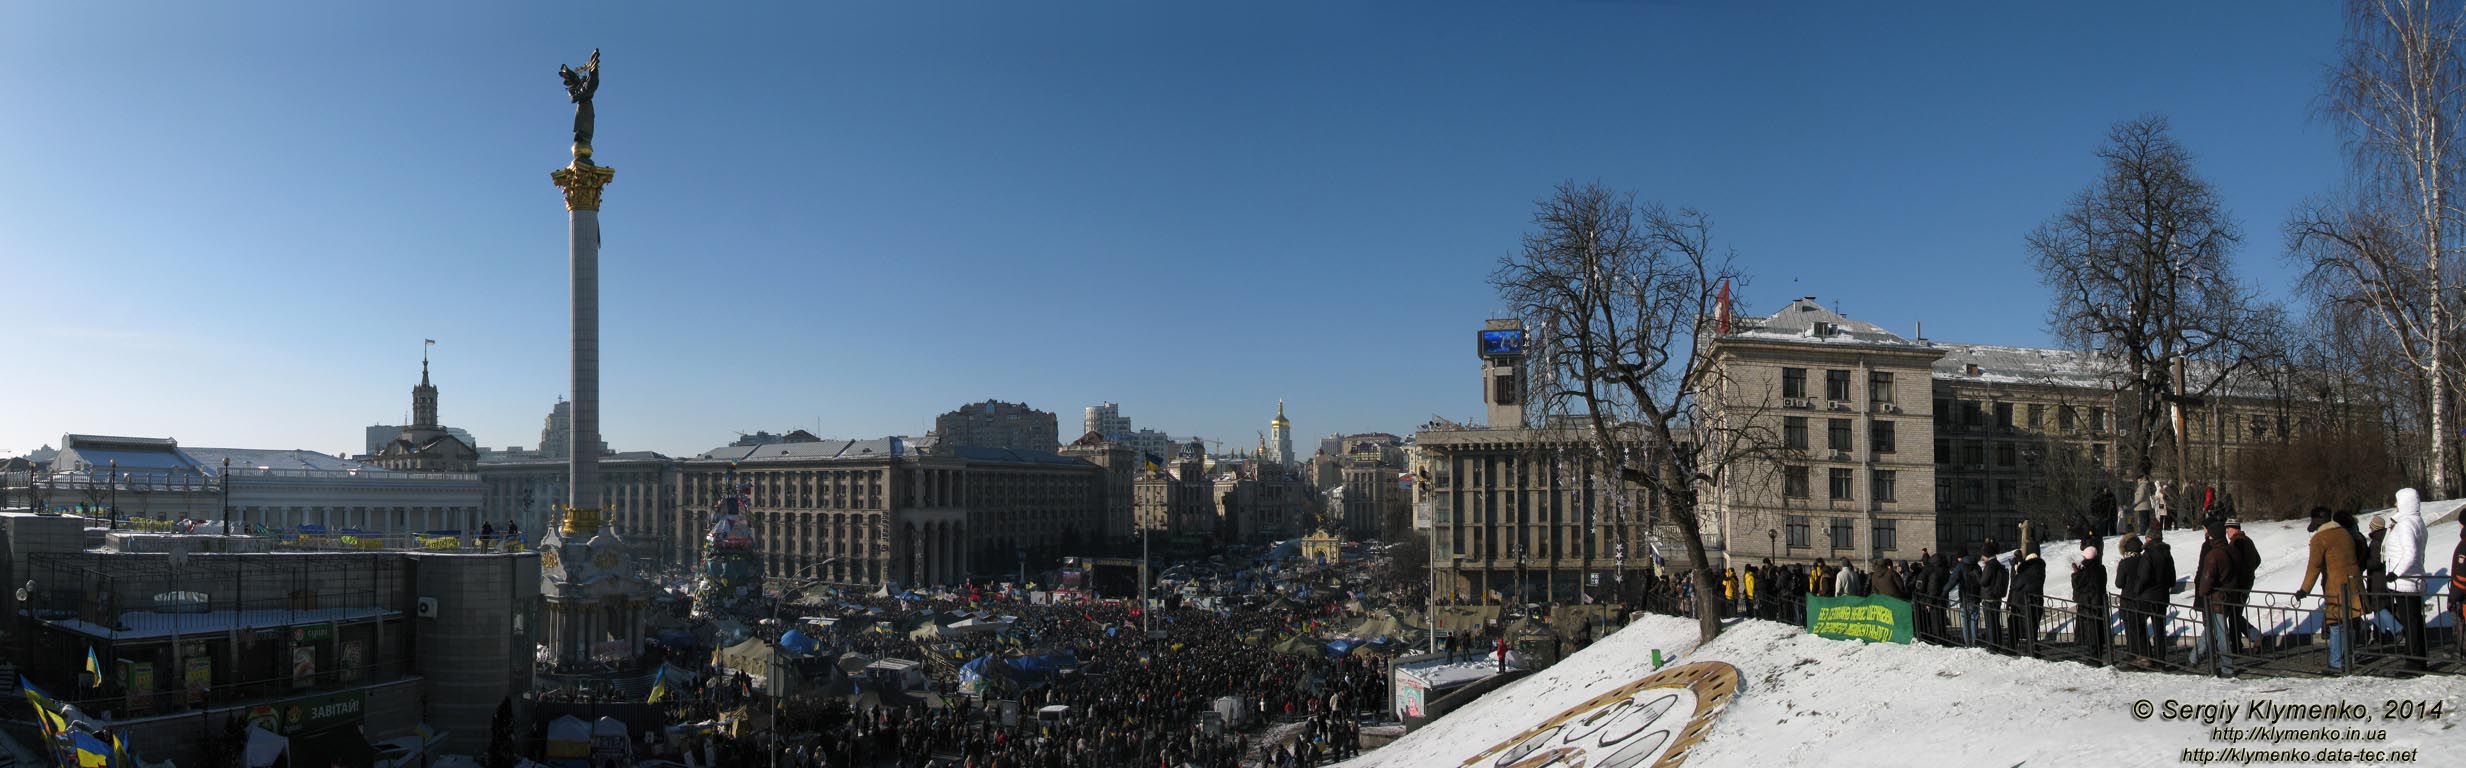 Фото Киева. Площадь Независимости, вид со стороны улицы Институтская (панорама ~120°). «Евромайдан» 2 февраля 2014 года, около 13:35.